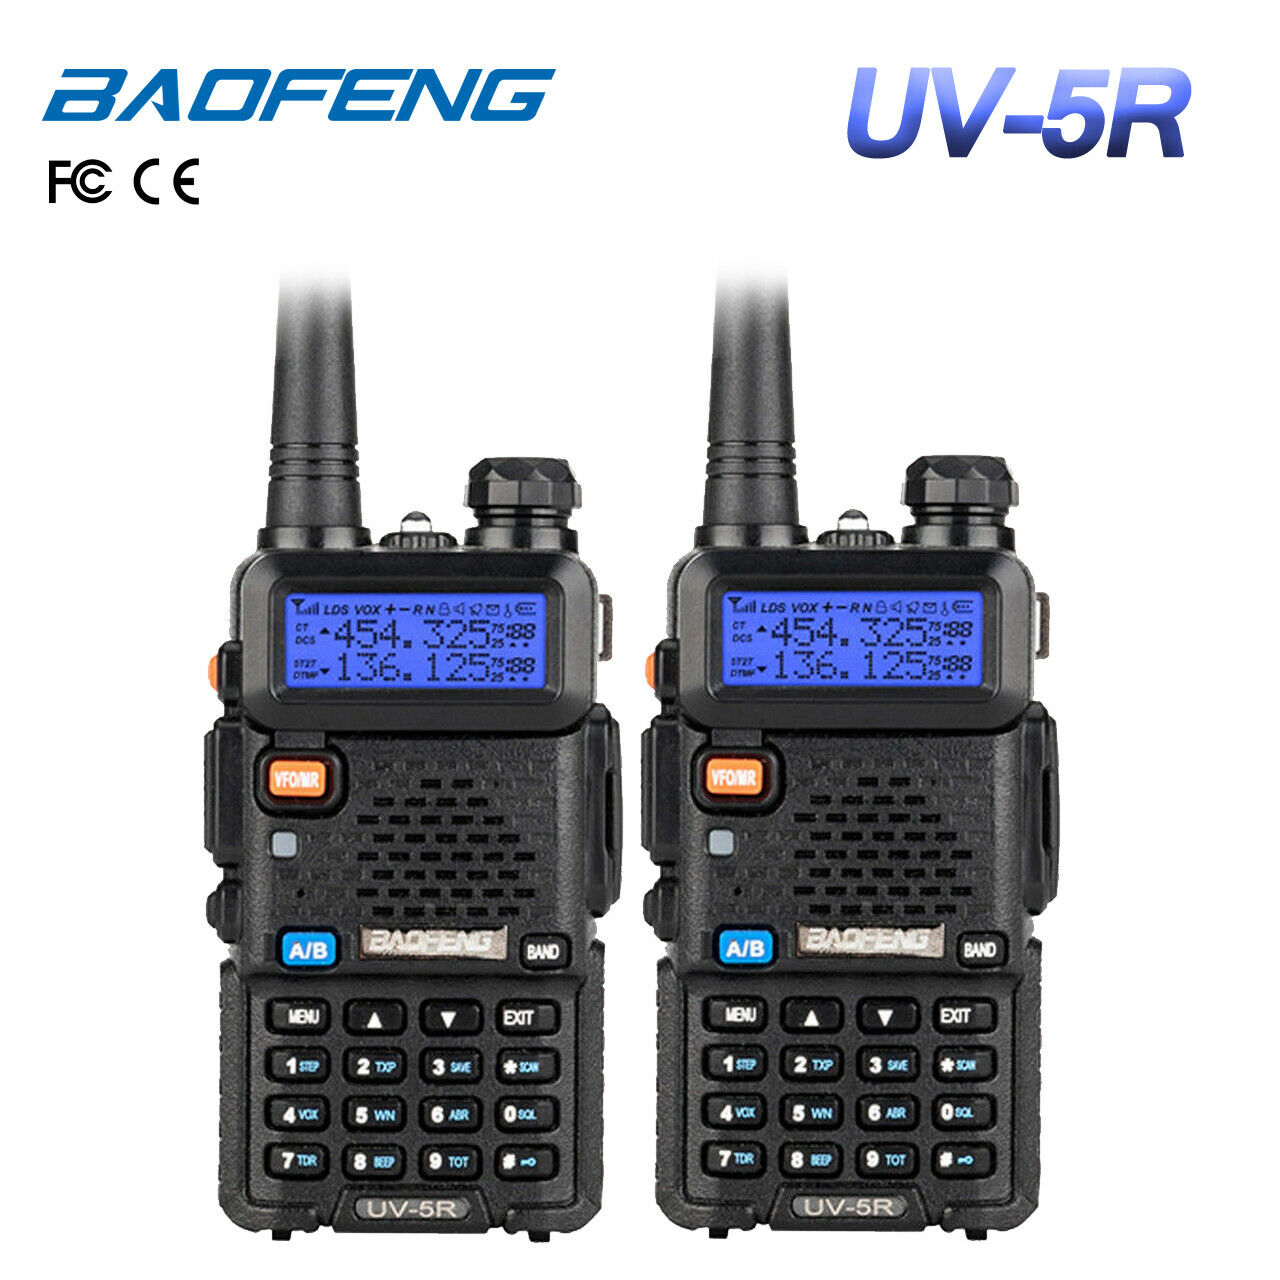 Us 2x Baofeng Uv-5r Dual-band 2m/70cm Vhf Uhf Fm Transceiver Ham Two-way Radio